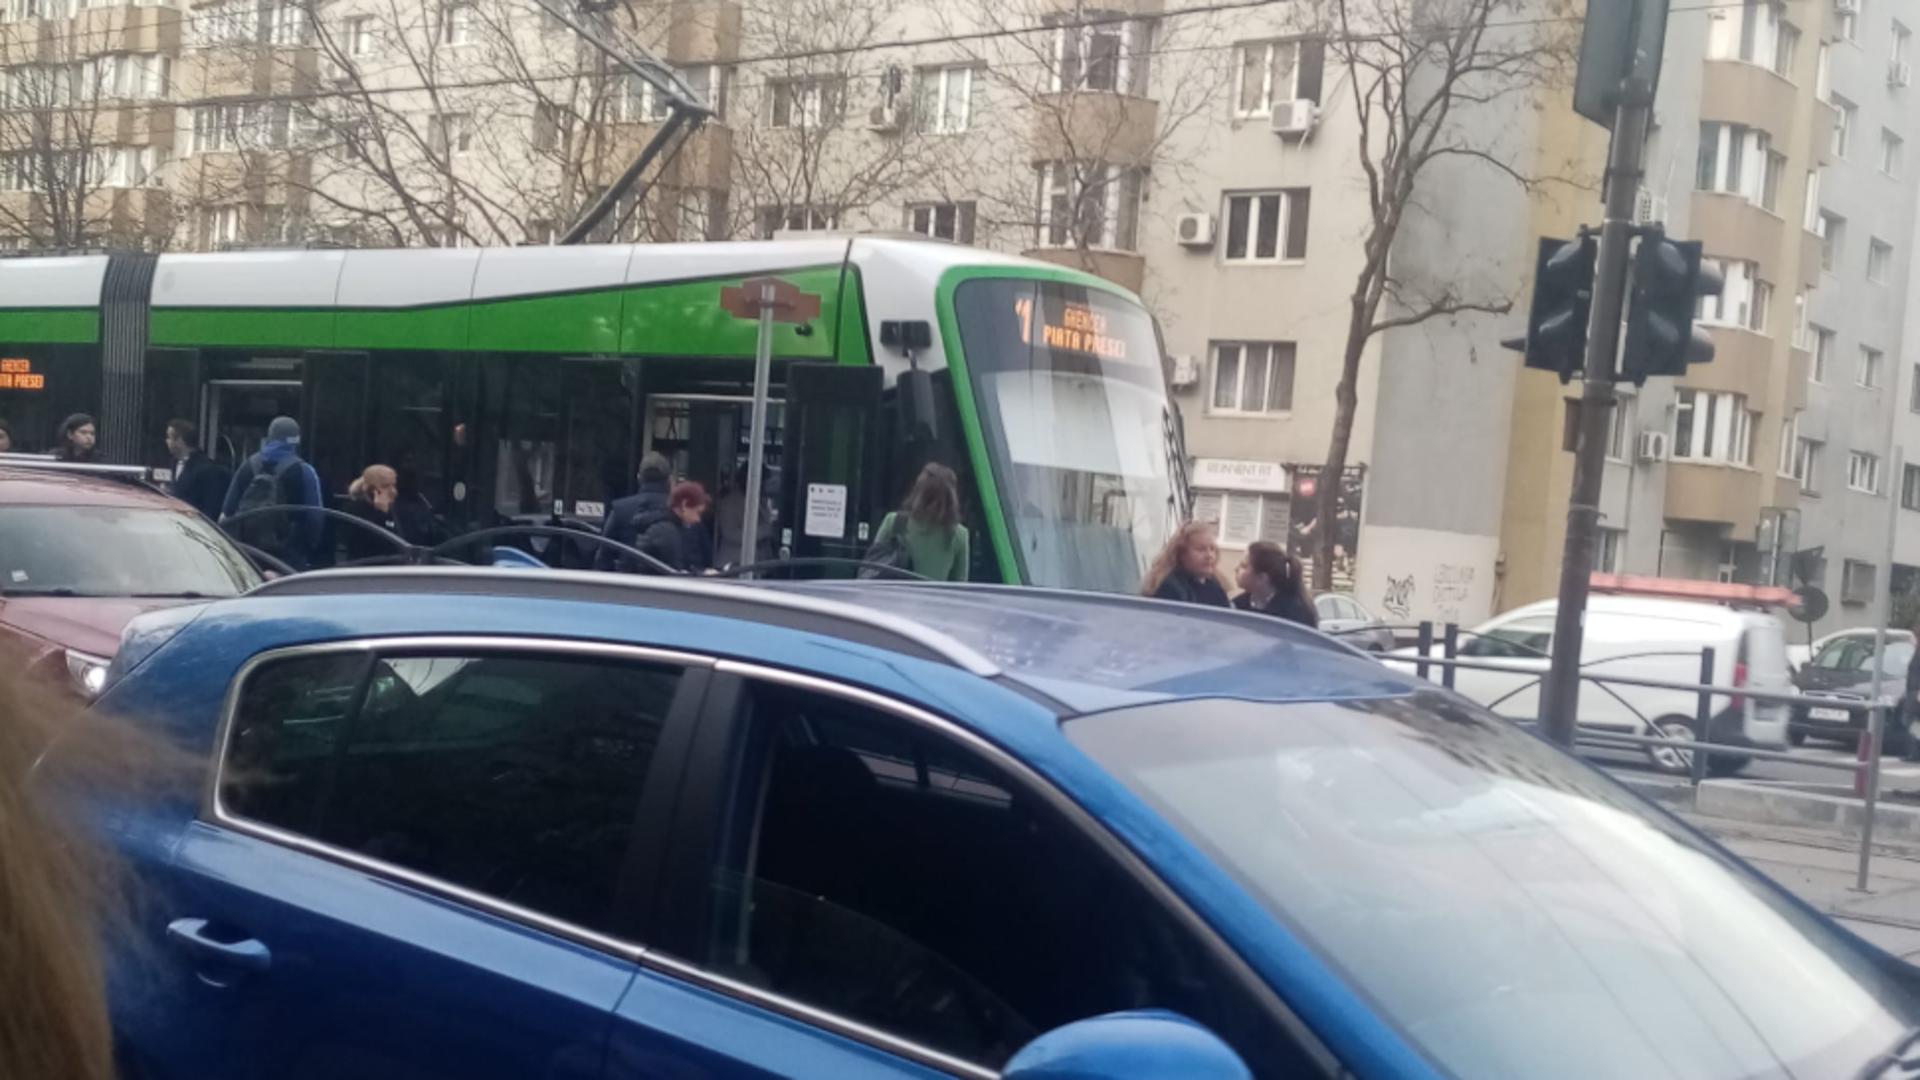  S-a reluat circulația pe linia 41, în zona Pasaj Lujerului - Pod Ciurel. Traficul dat peste cap de un blocaj cauzat de lipsa de curent - FOTO&VIDEO